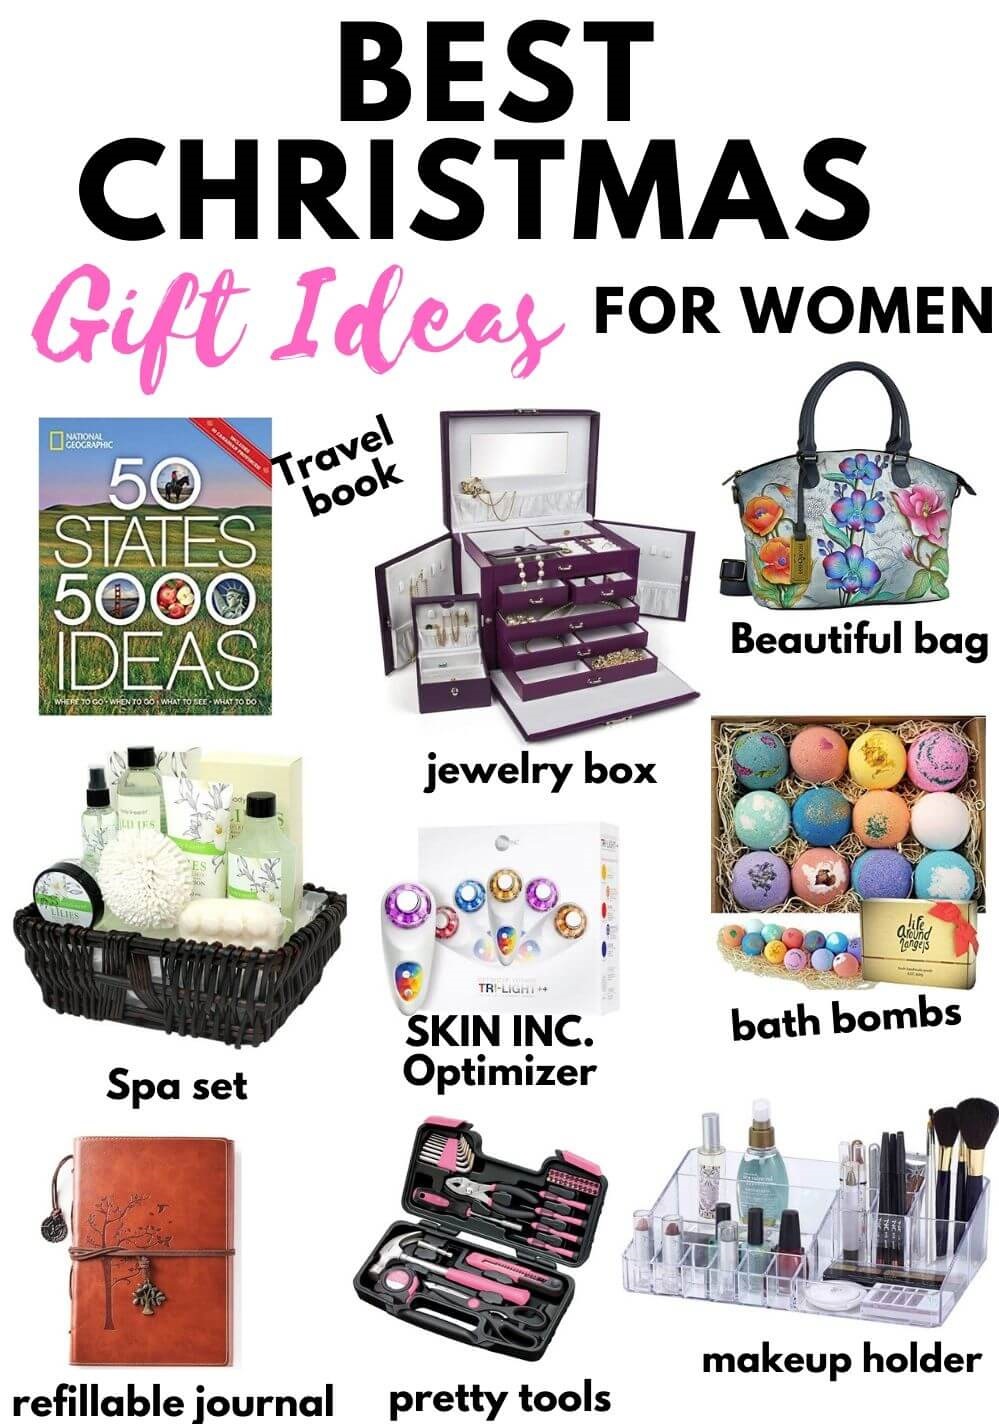 Unique Gift Ideas For Women ⋆ Classy ché